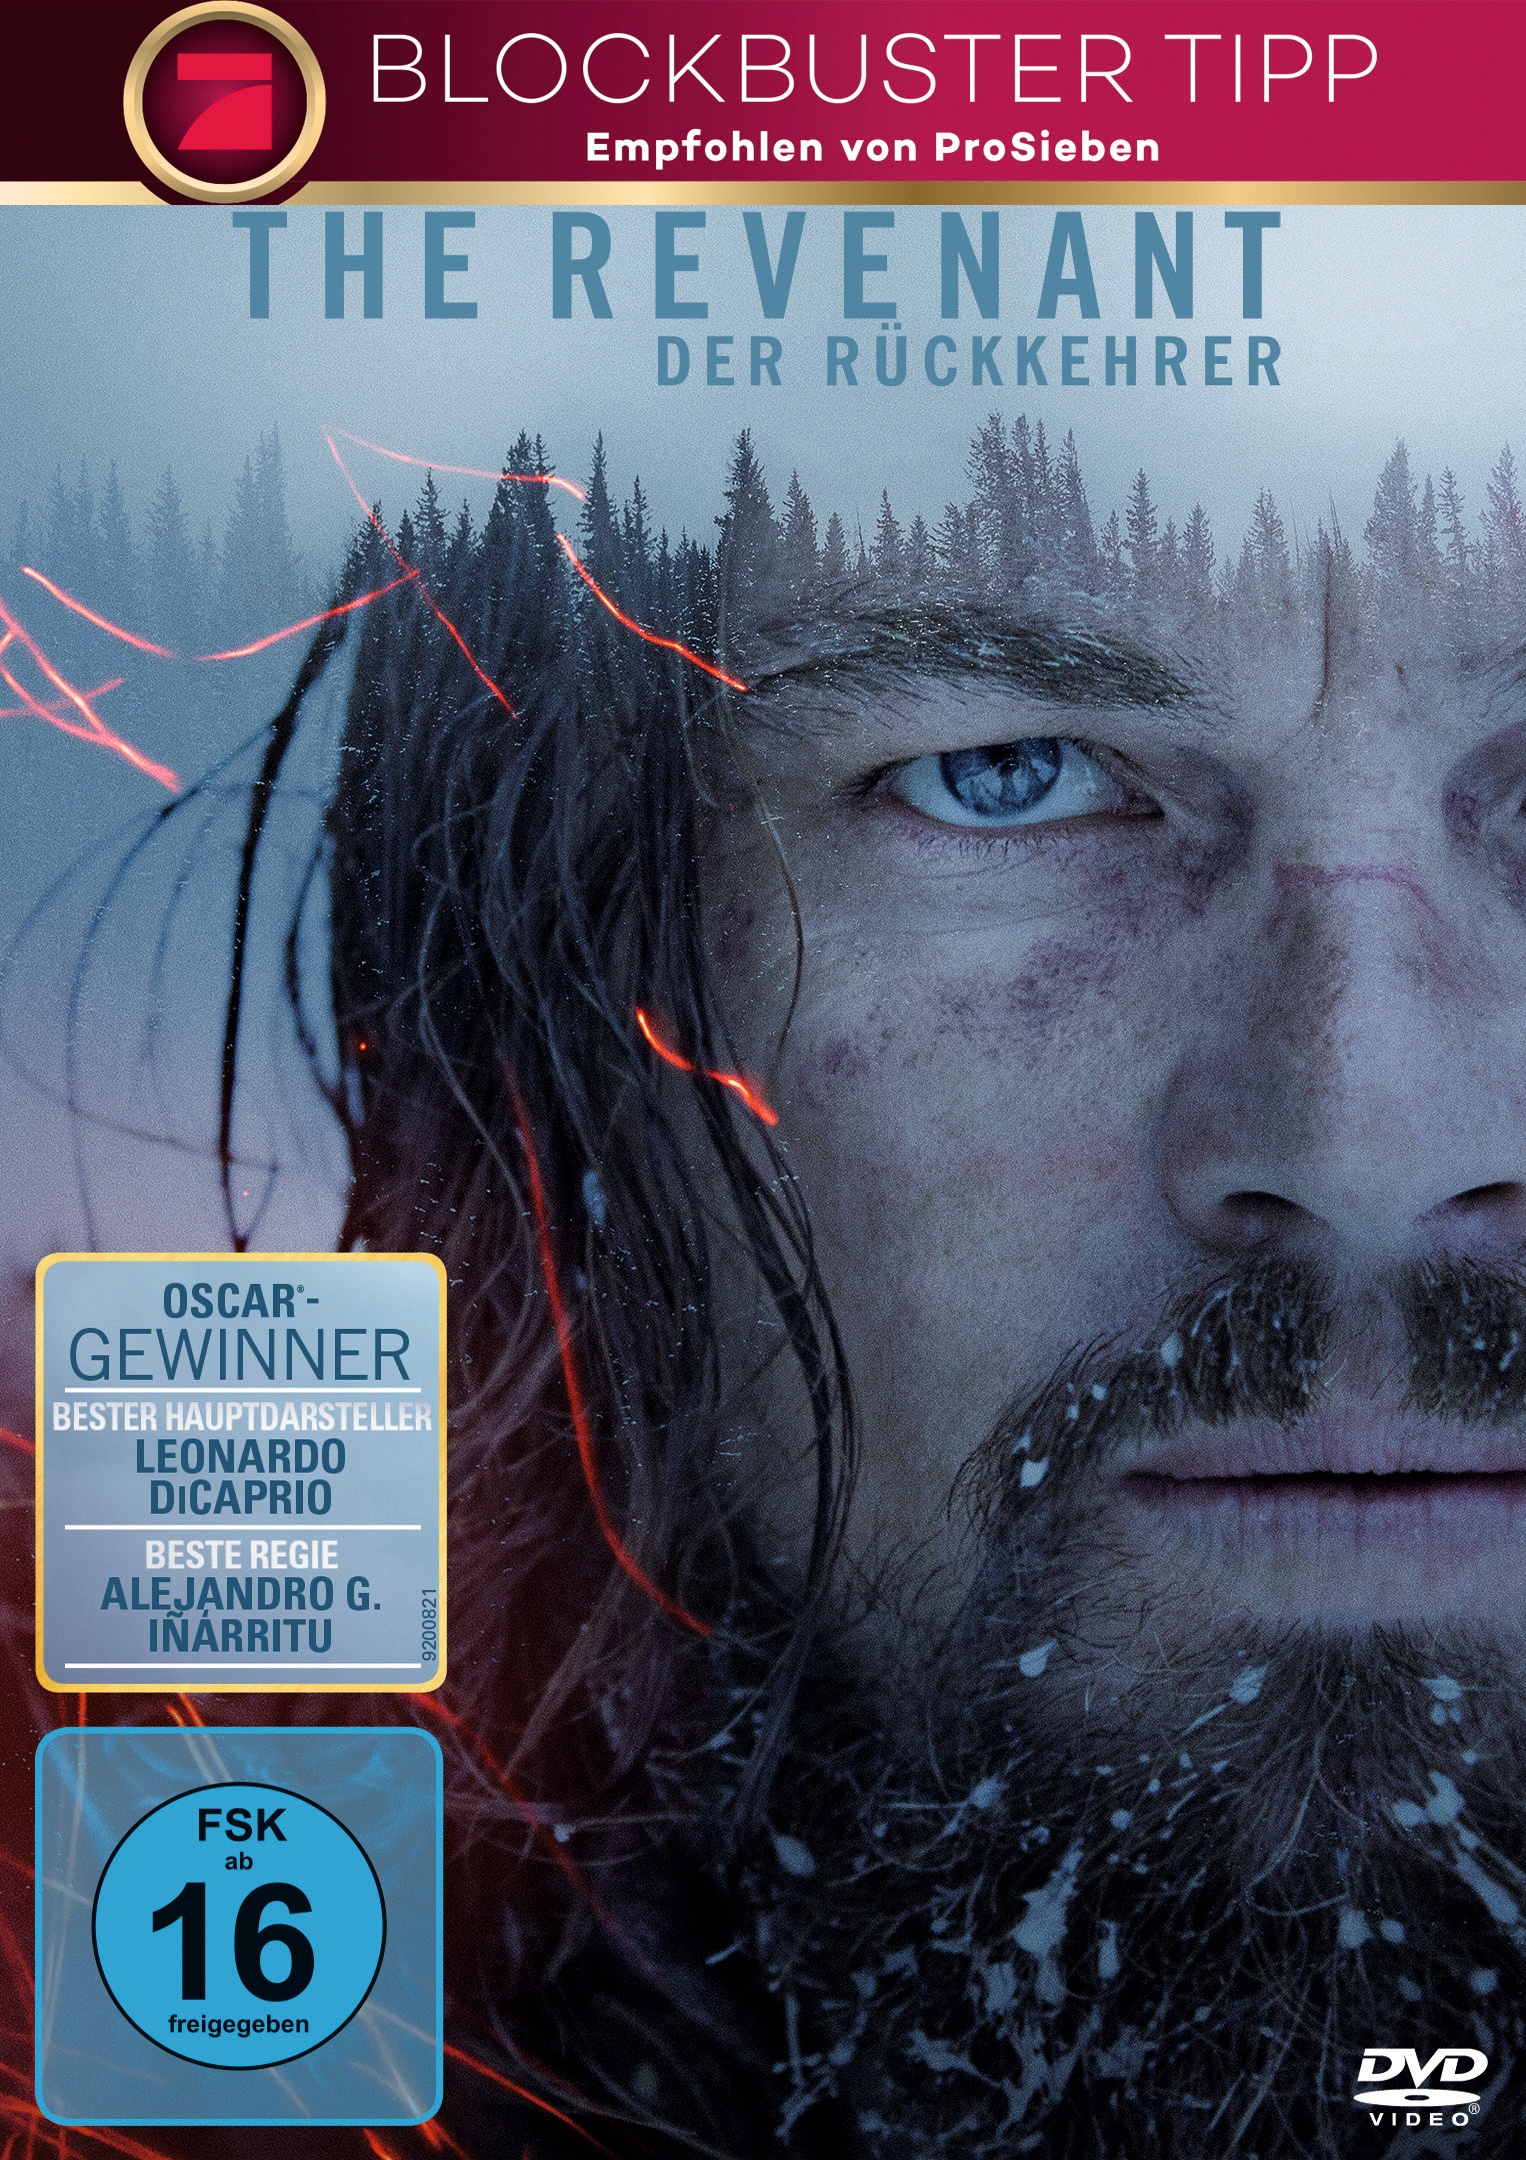 The Revenant -  Der Rückkehrer (DVD)